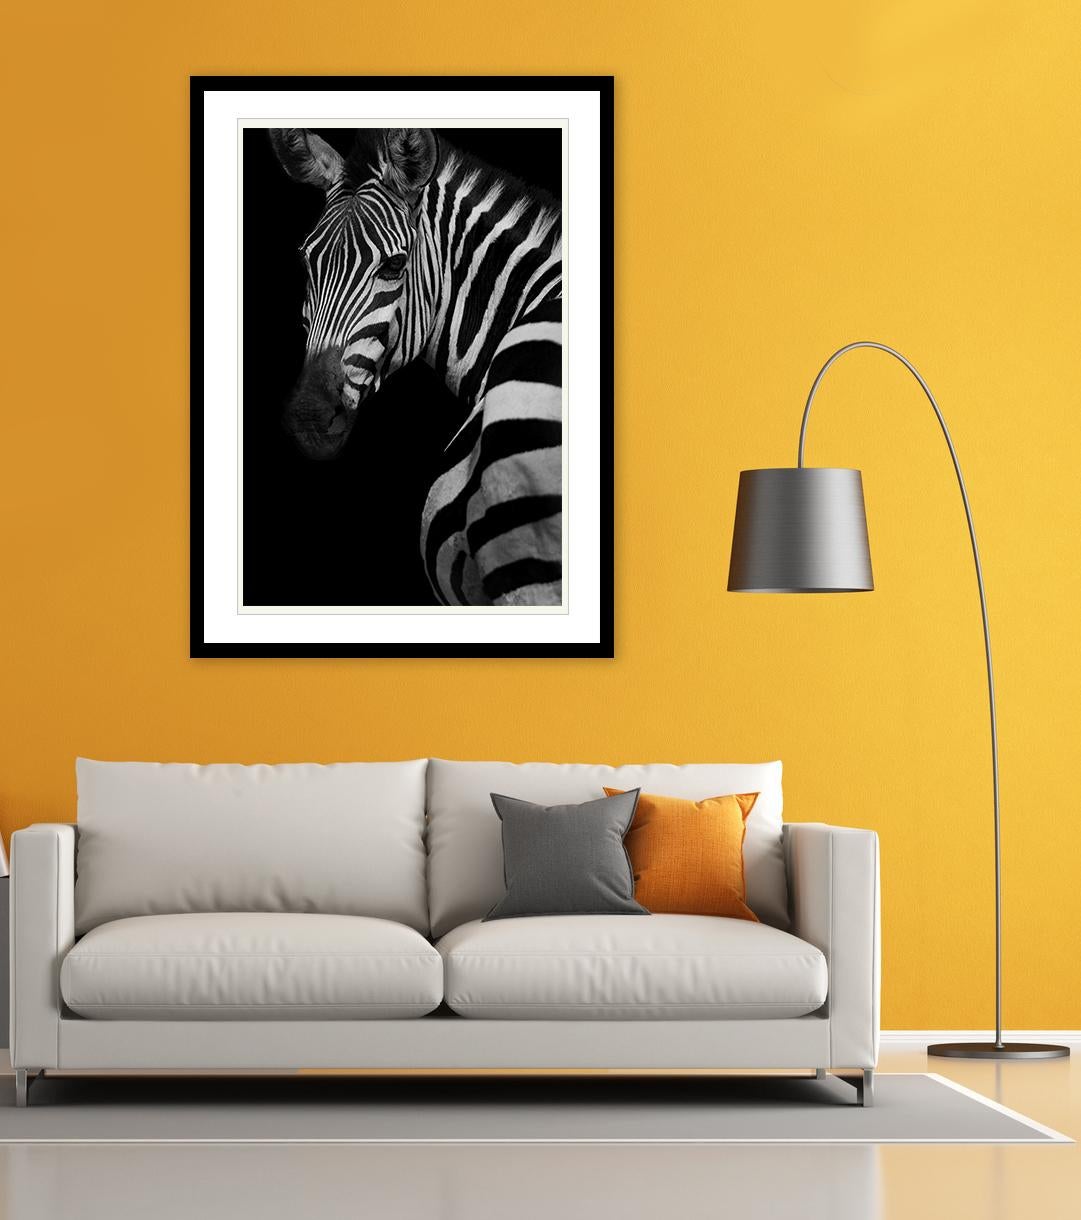 Profile of a Zebra (édition limitée de 5 exemplaires), 40